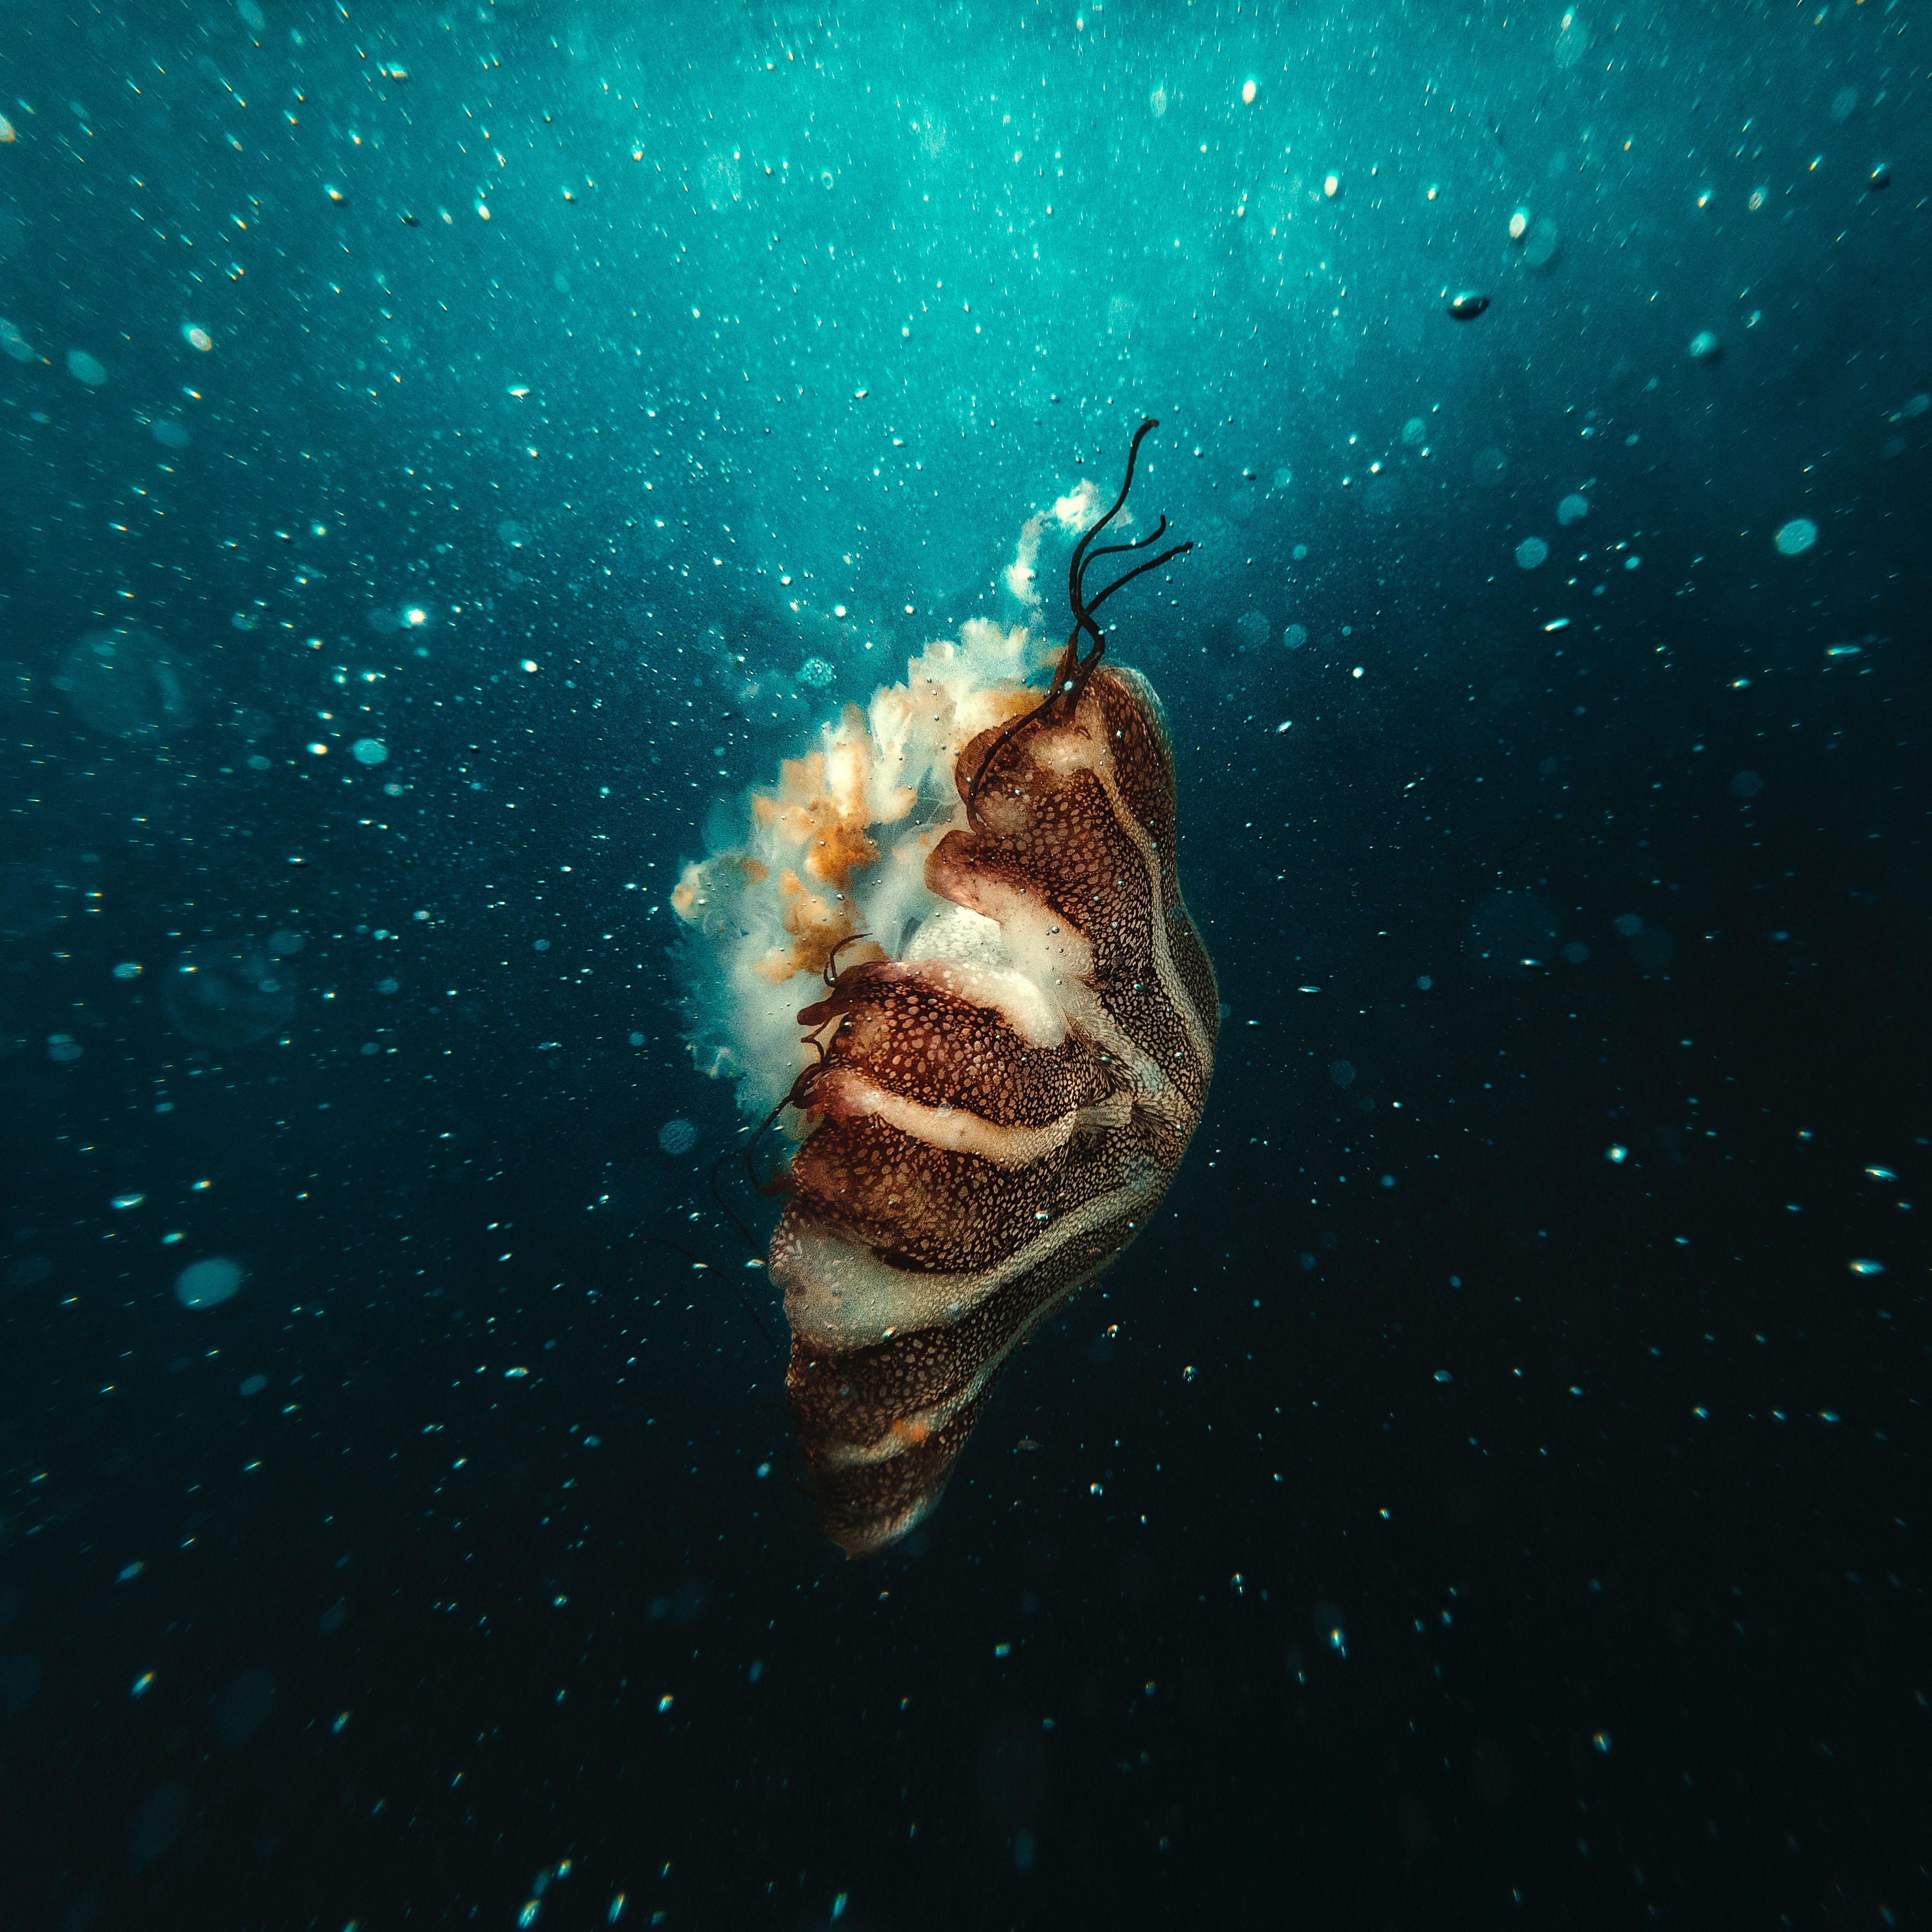 jellyfish, underwater world, under water, animals, bubbles, underwater images